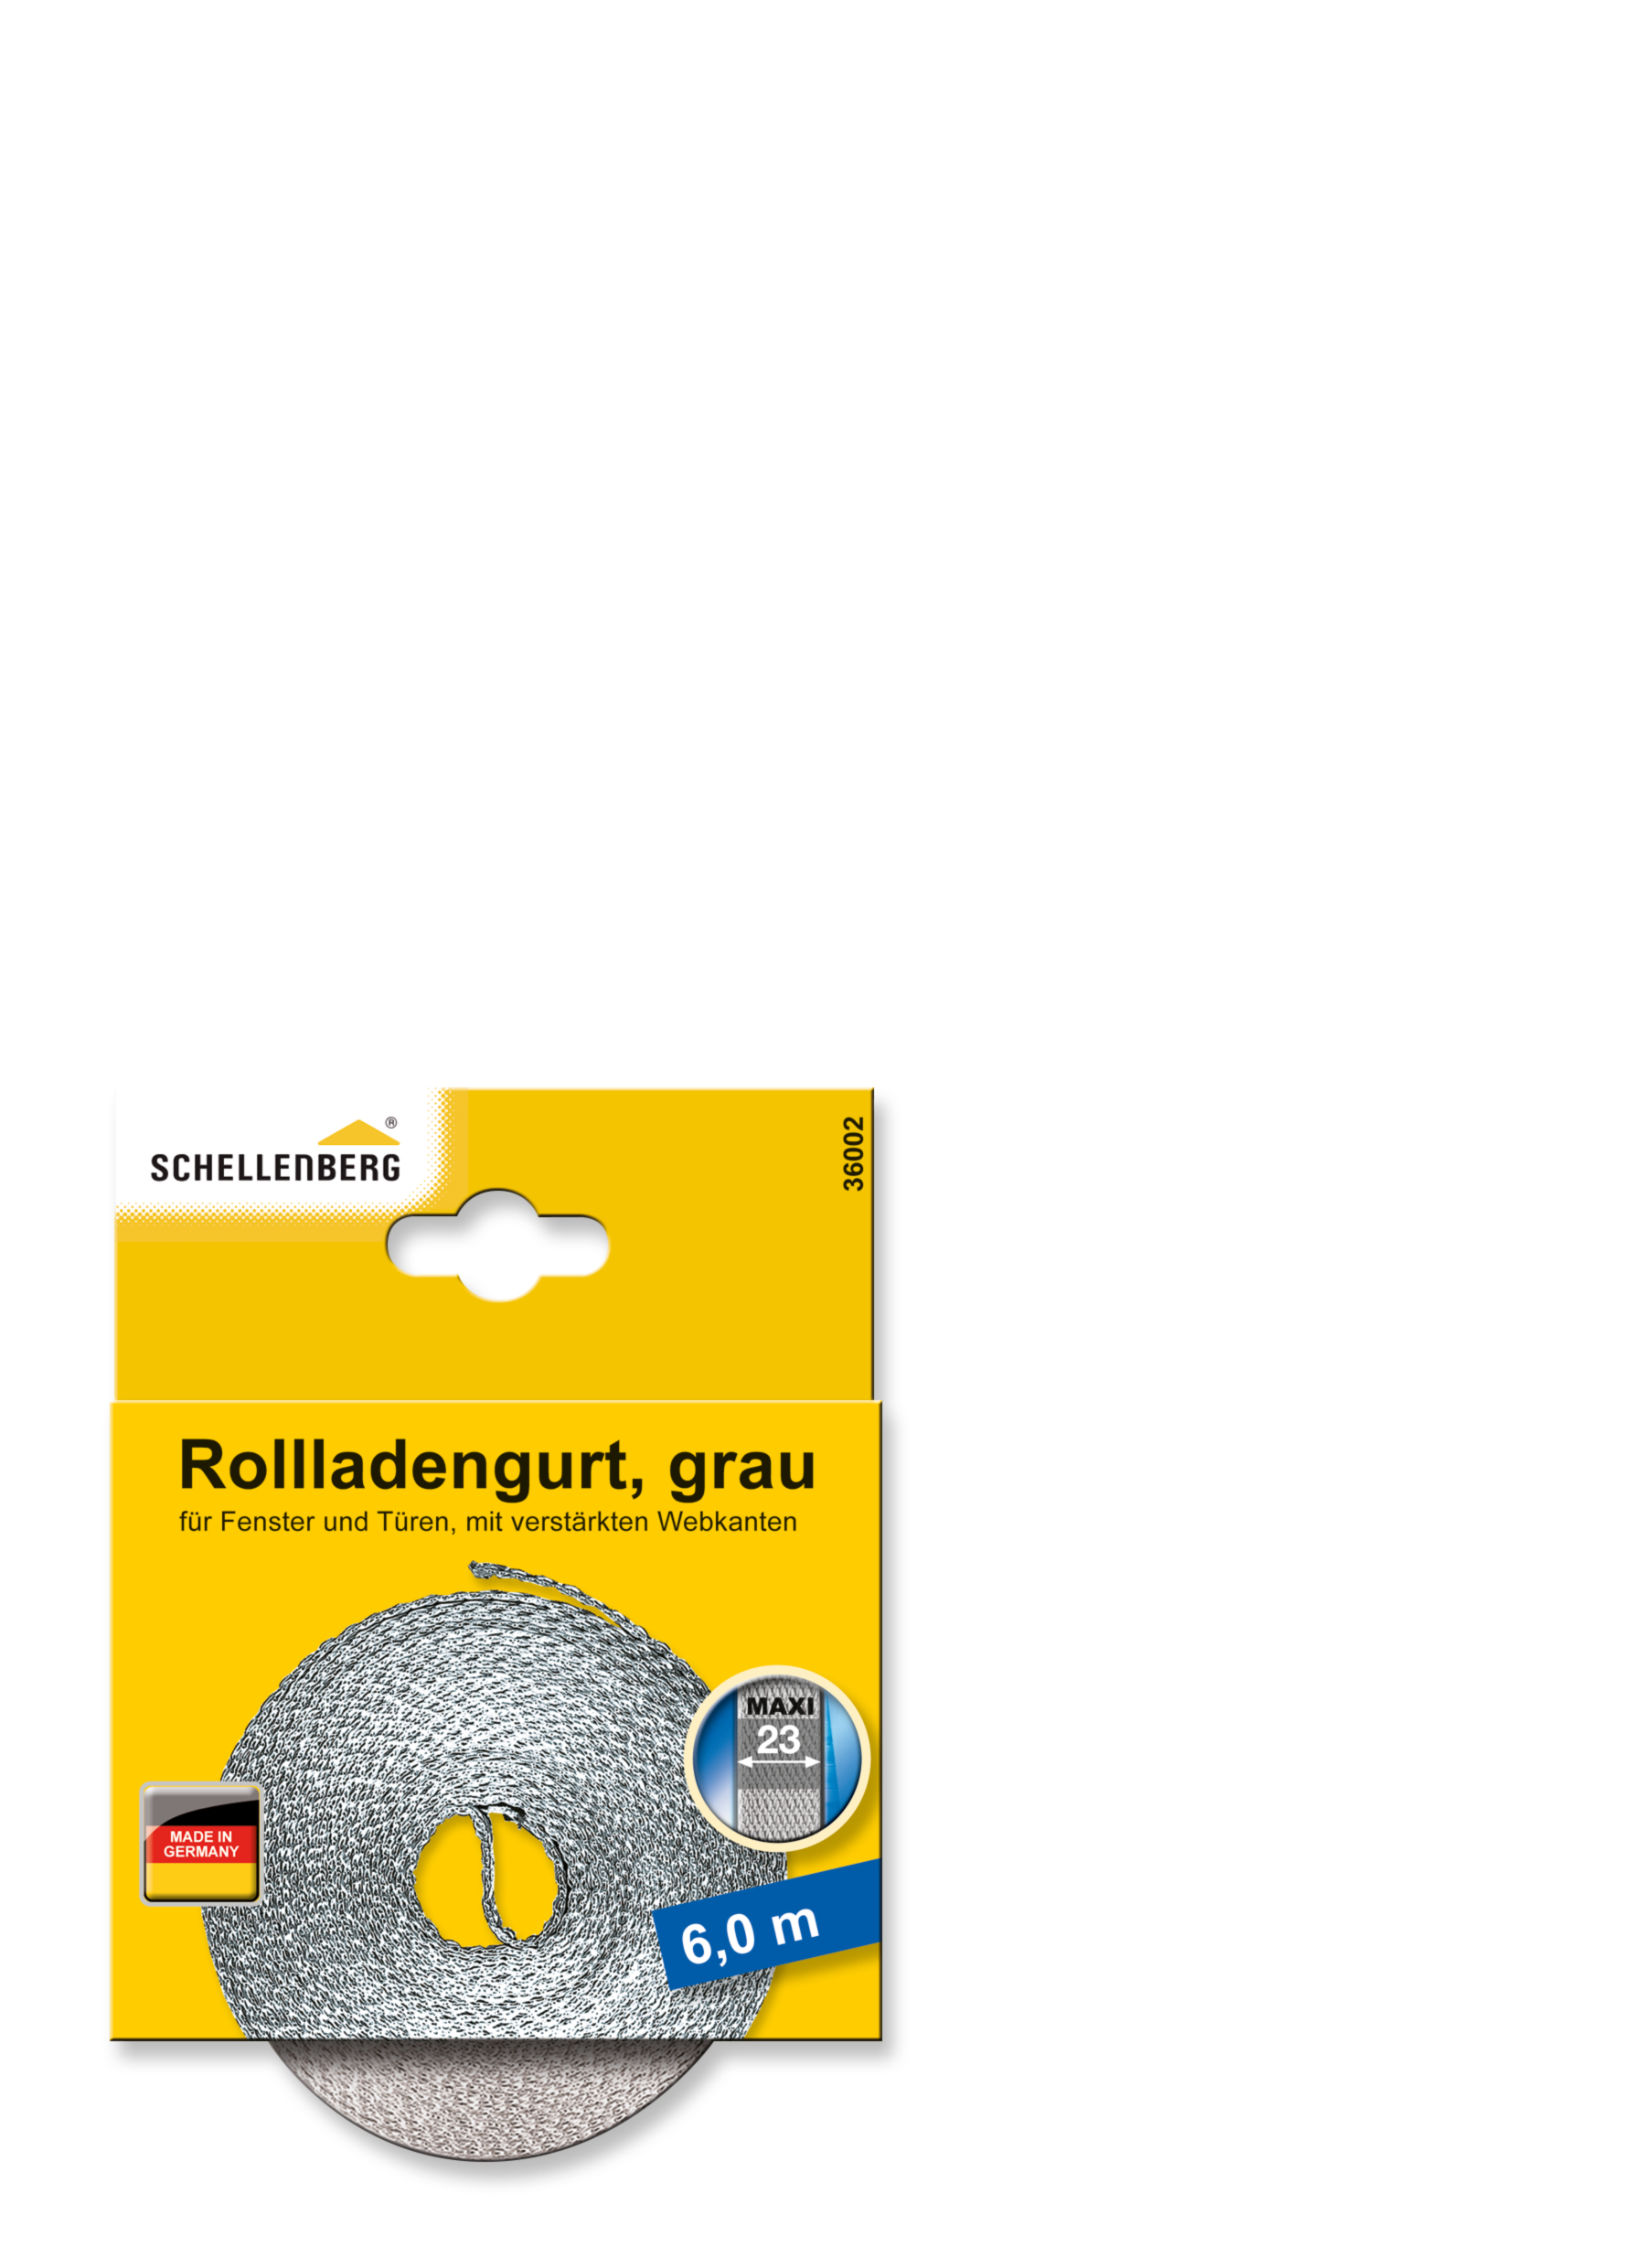 SCHELLENBERG Rollladengurt 23 mm/6,0 m grau 